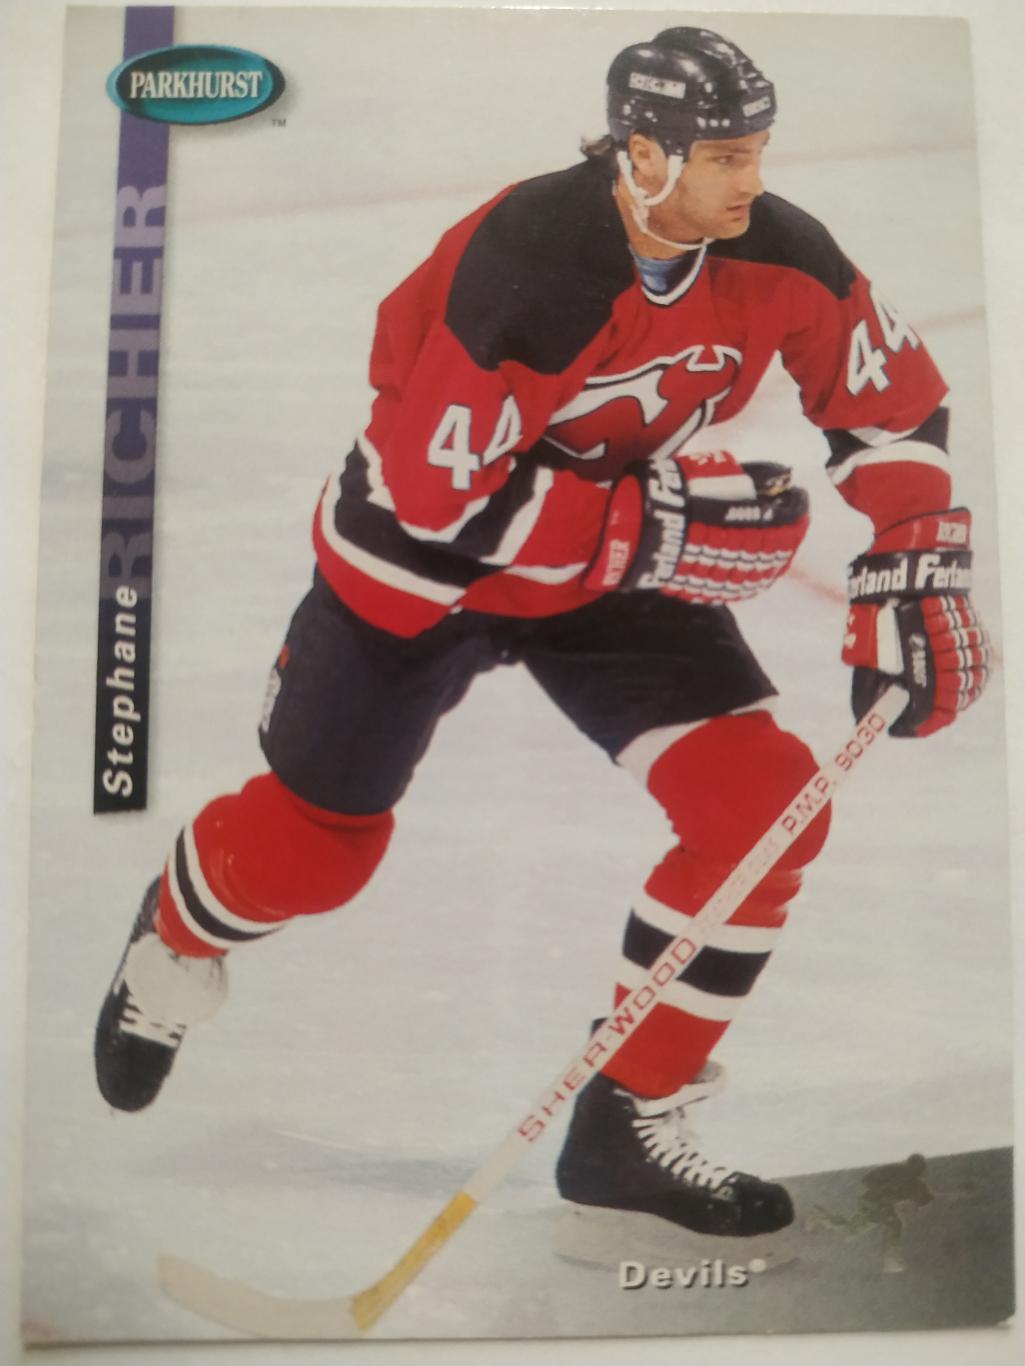 ХОККЕЙ КАРТОЧКА НХЛ PARKHURST 1994-95 NHL STEPHANE RICHER DEVILS #SE100